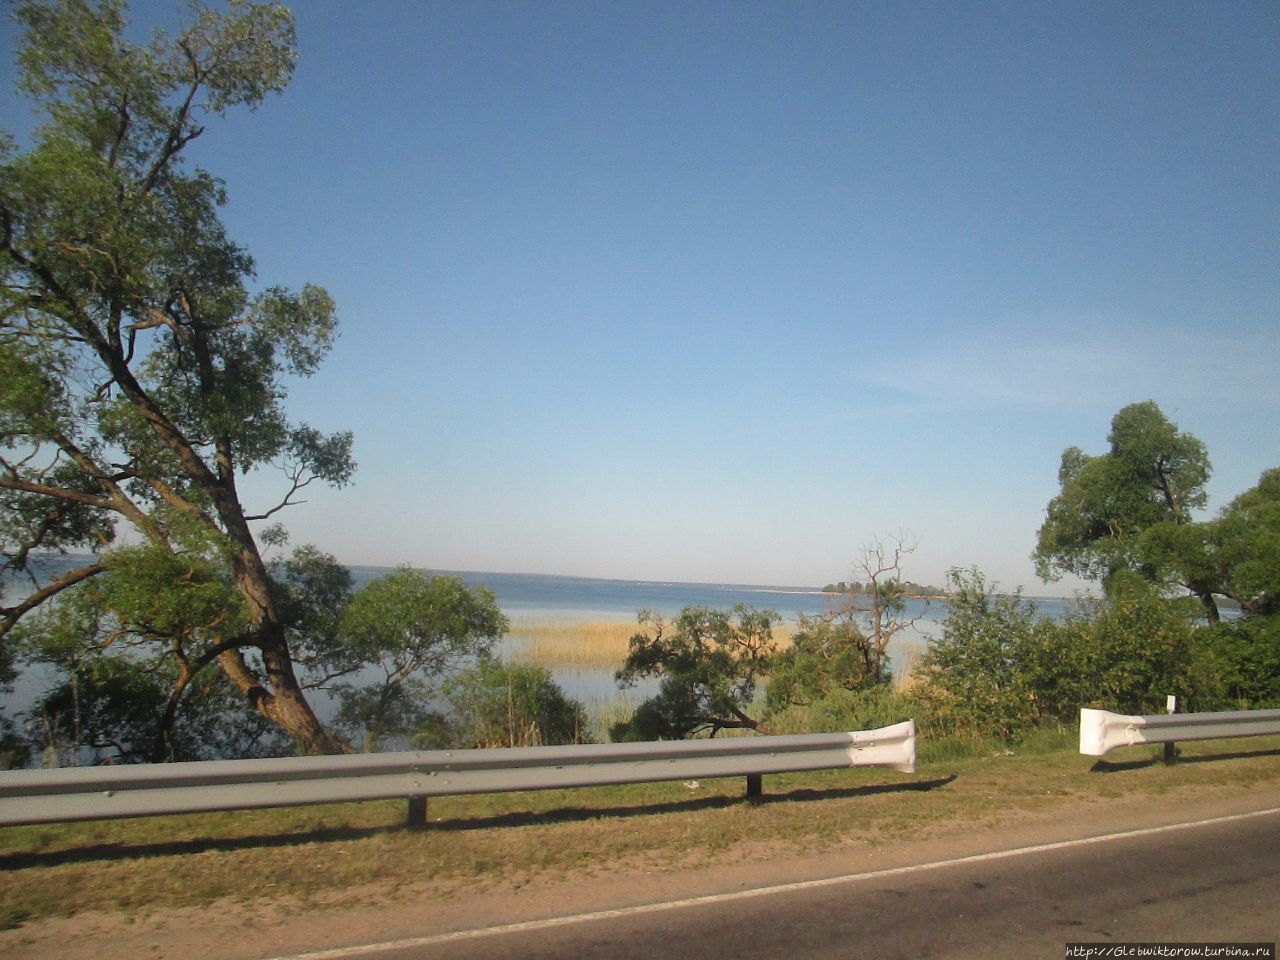 Утренняя поездка около озера Нарочь Нарочь, Беларусь